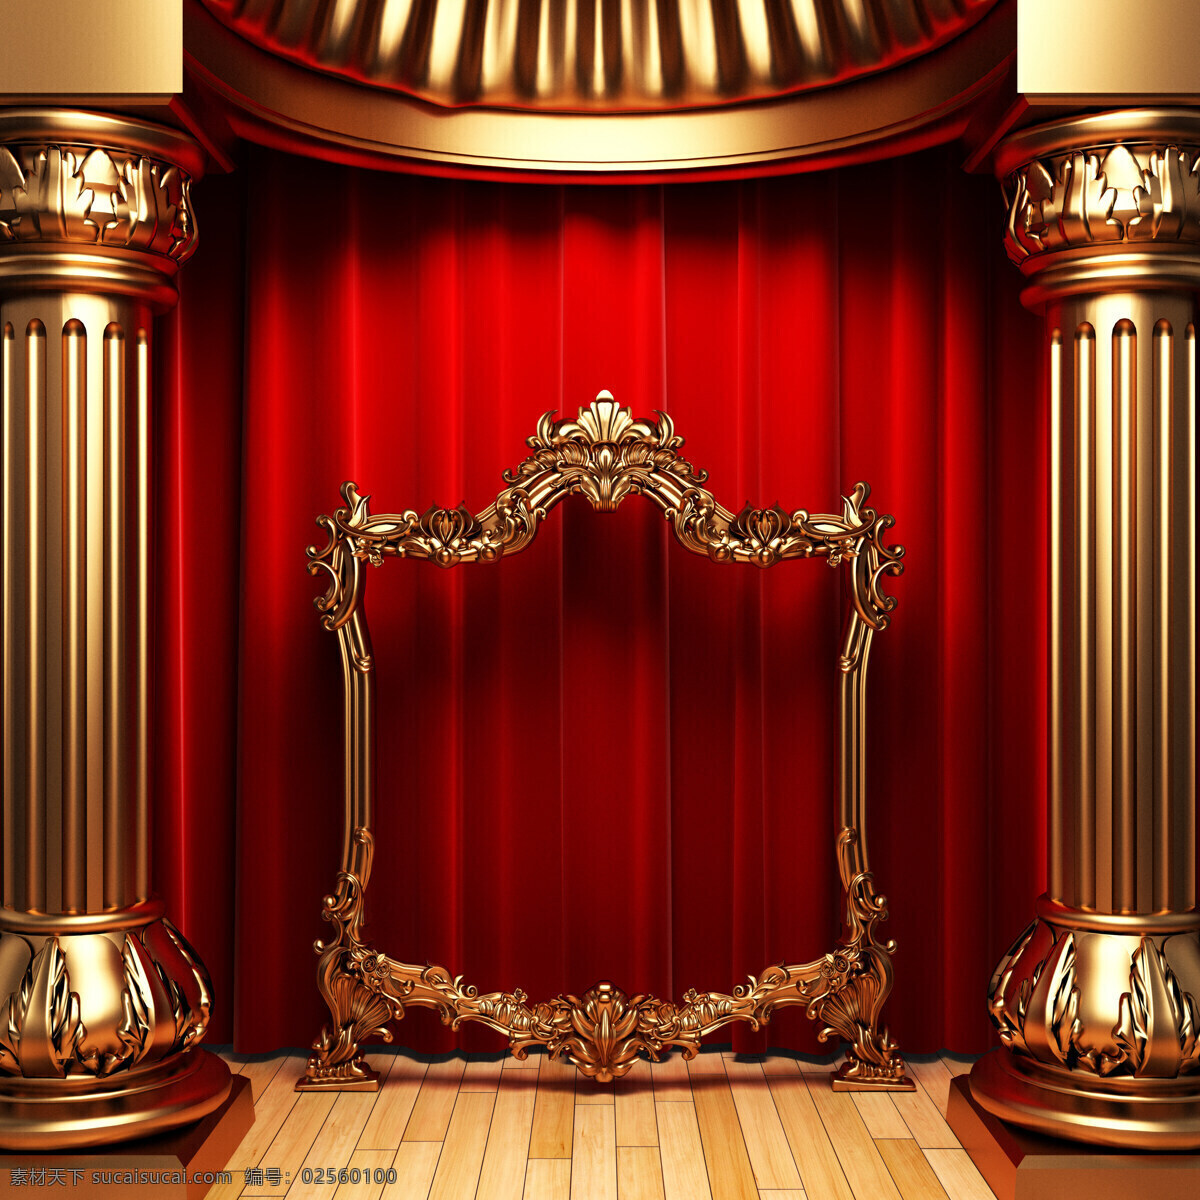 高清 舞台 背景 五 高清图片 舞台背景 背景图片 罗马柱 相框 地板 窗帘 展板 红色